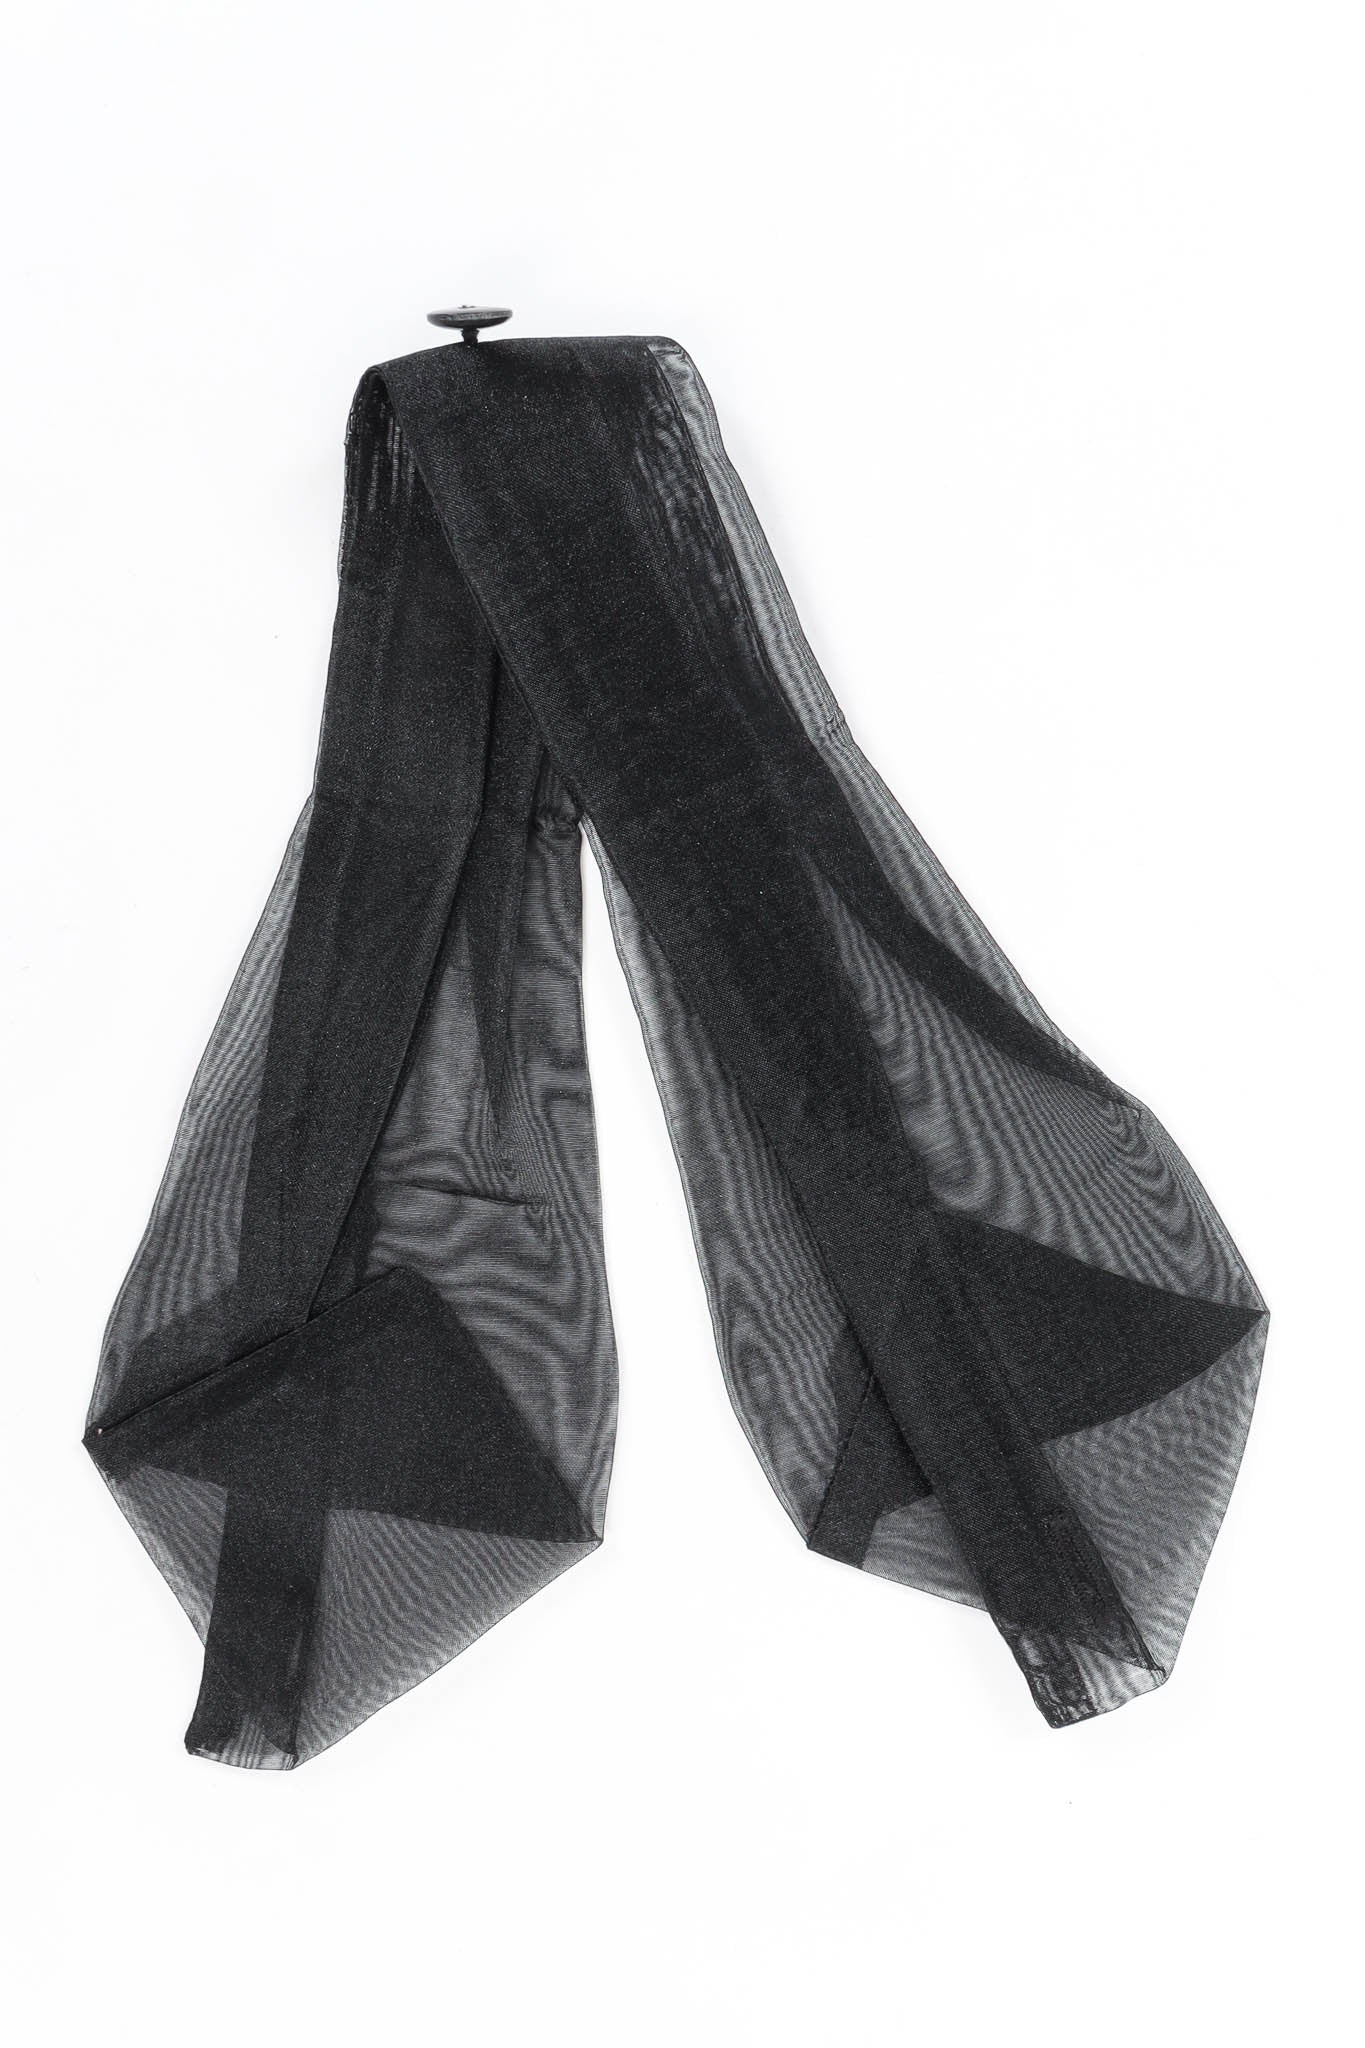 Vintage Issey Miyake Crinkle Pleat Tunic Suit Dress sheer black tie @ Recess Los Angeles